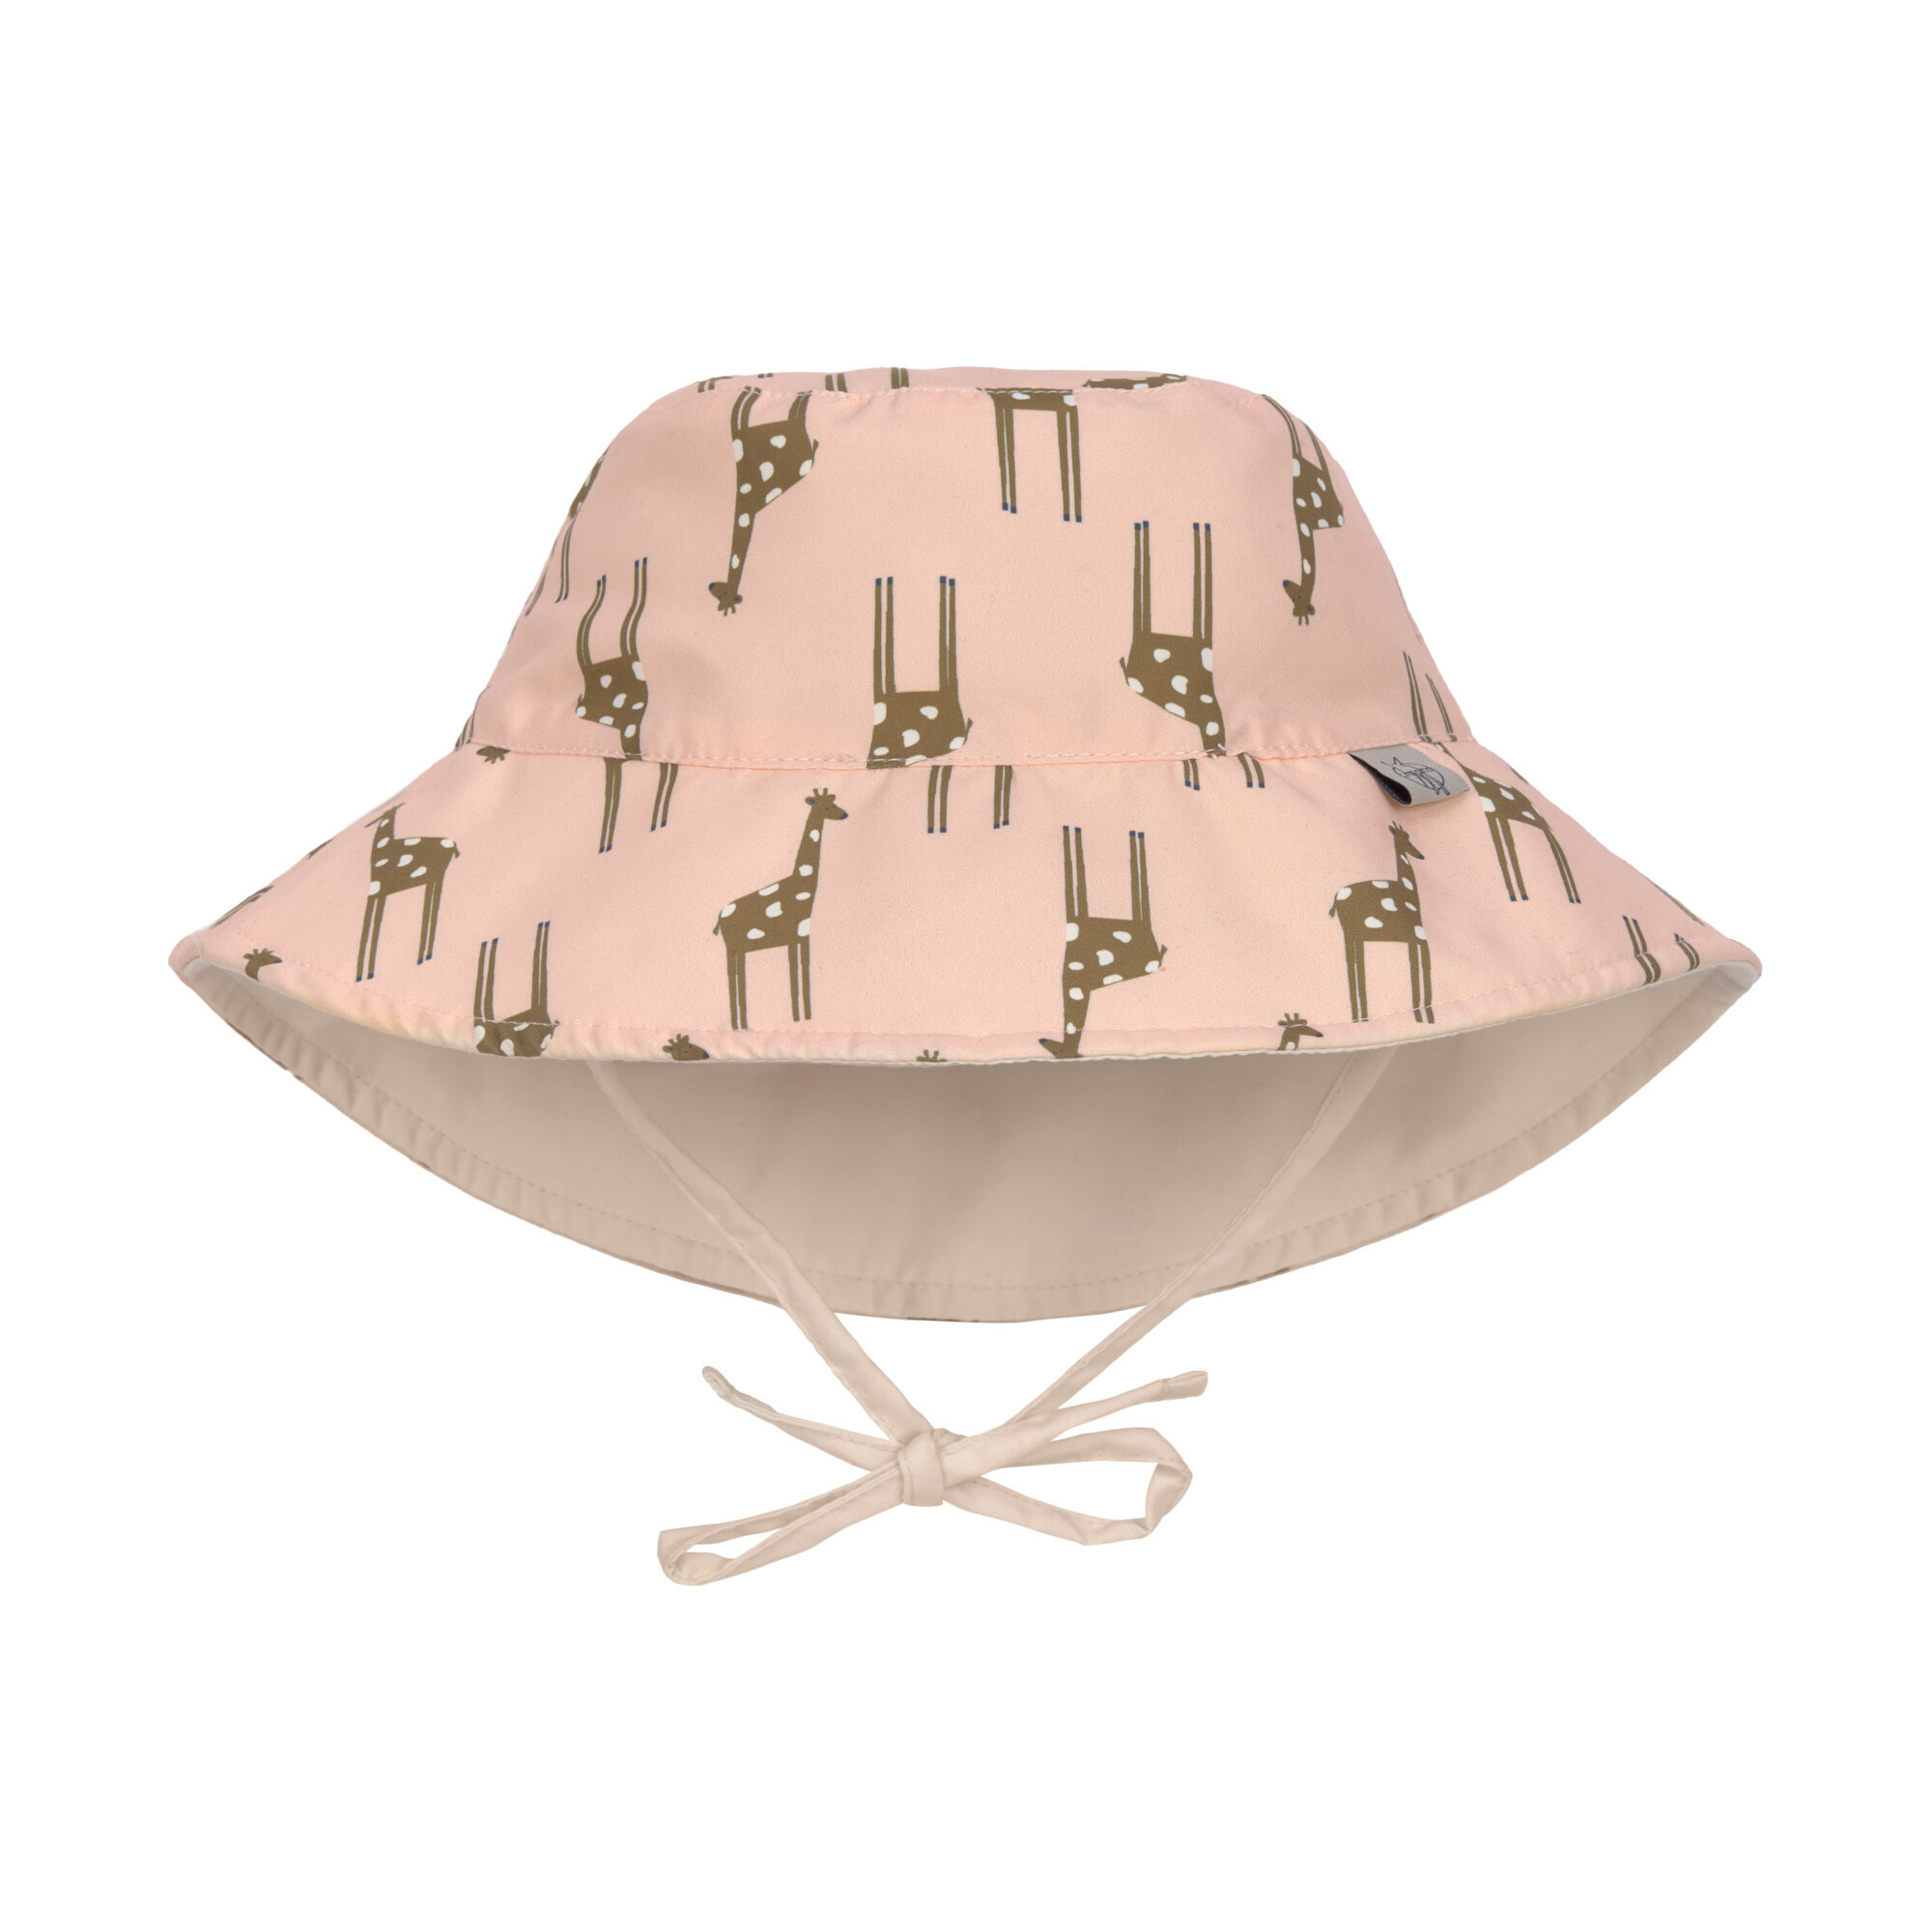 Lässig - UV sun protection bucket hat for kids - Giraffe - Rose